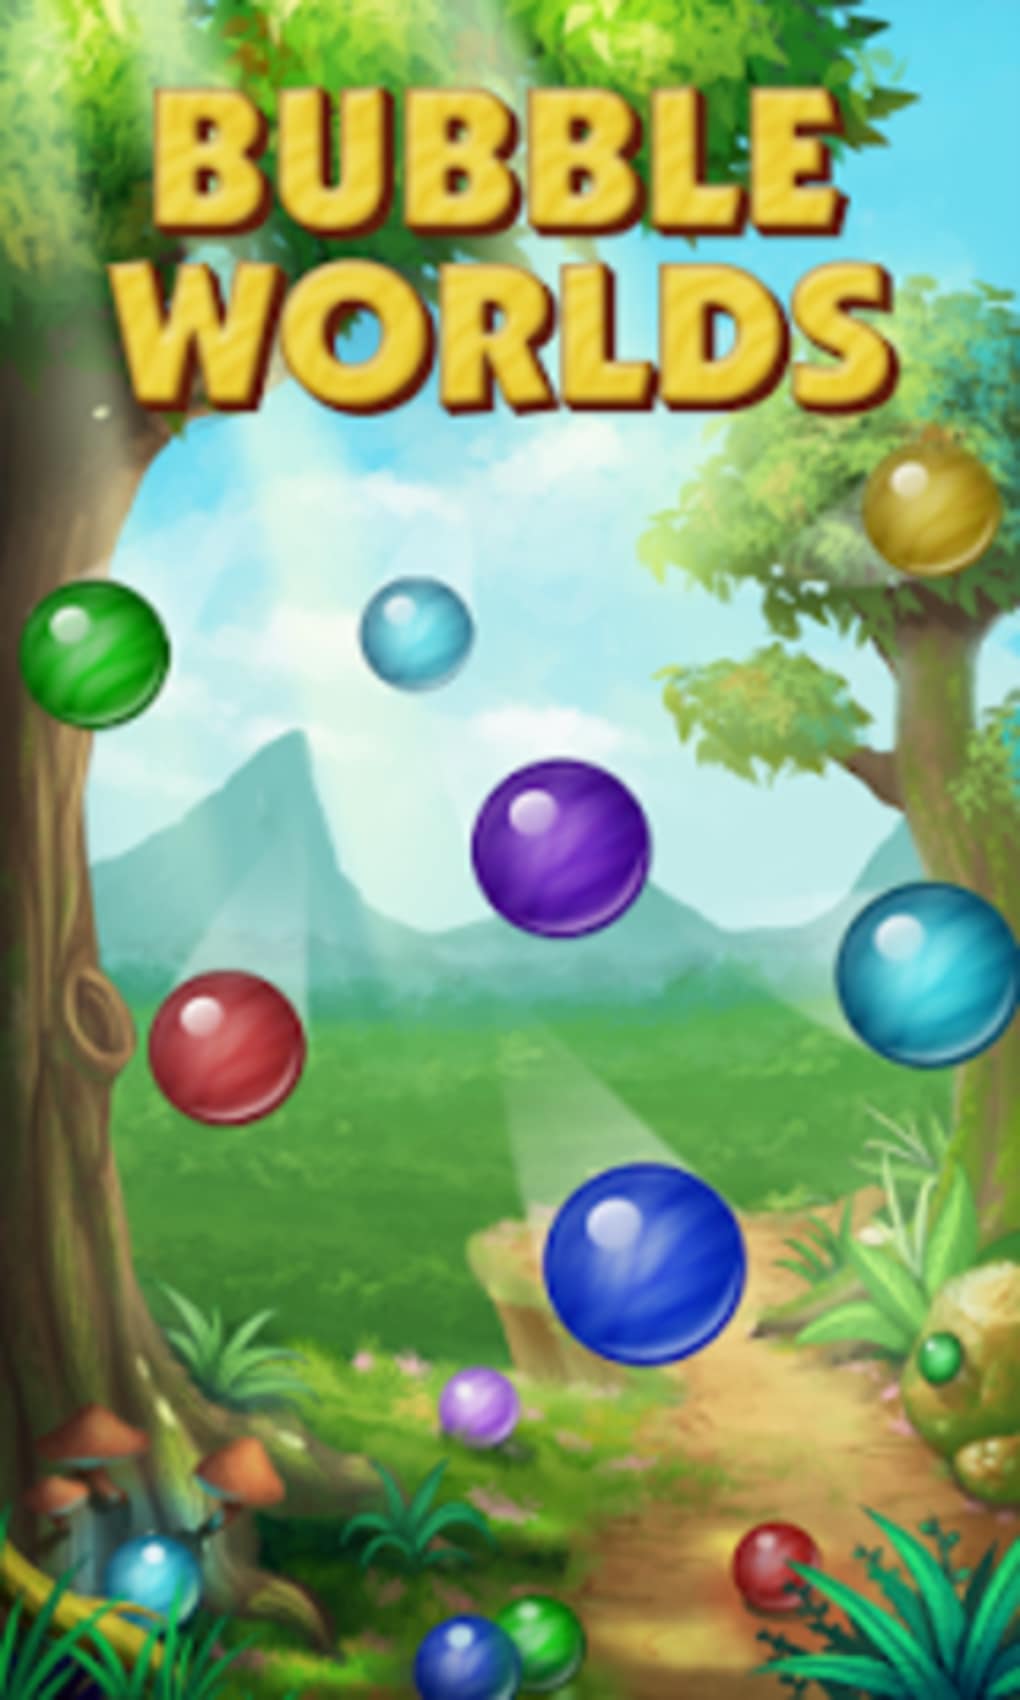 Bubble worlds mod apk